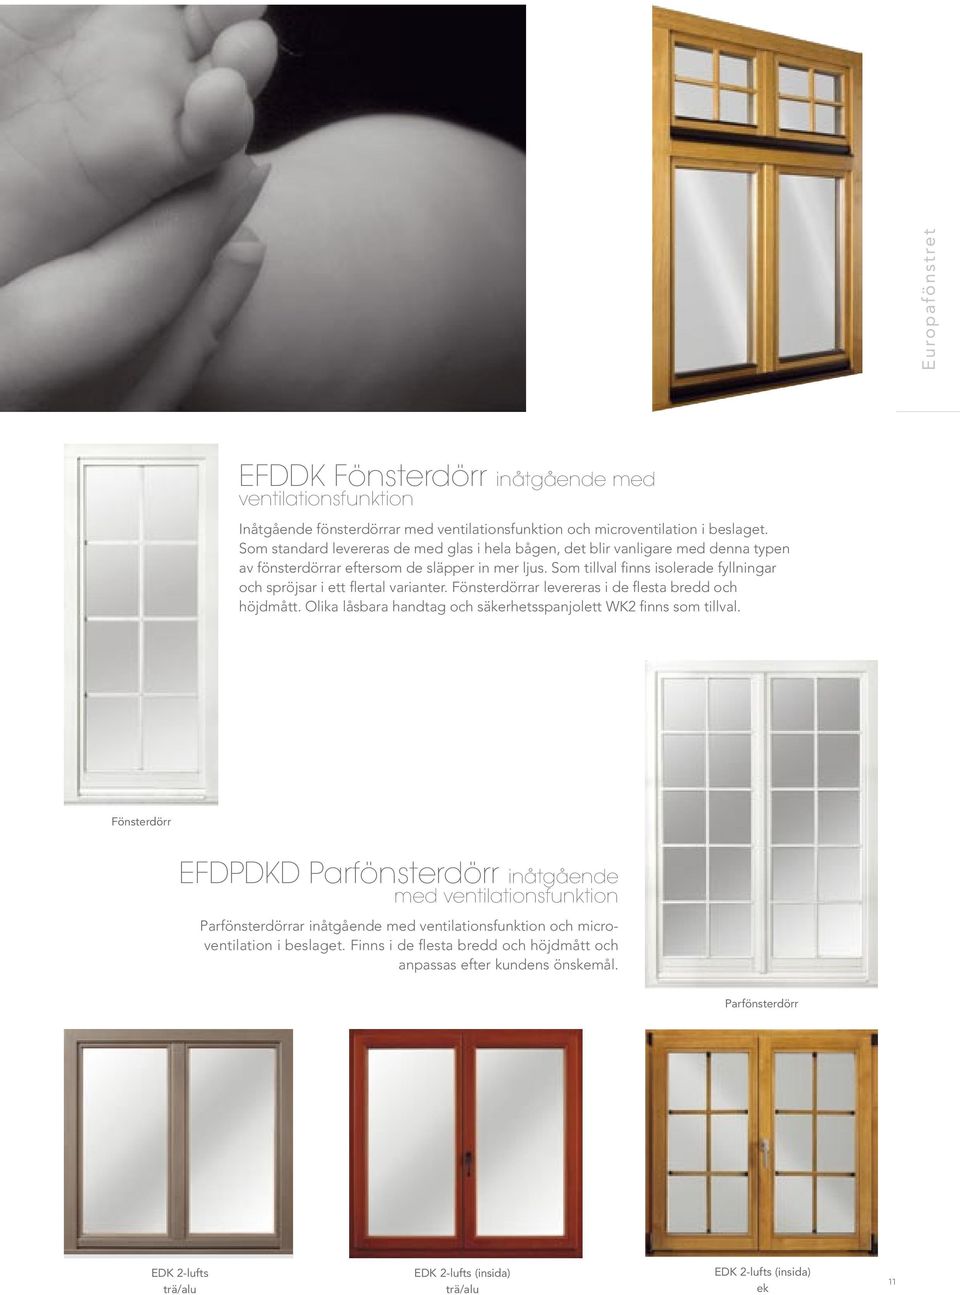 Som tillval finns isolerade fyllningar och spröjsar i ett flertal varianter. Fönsterdörrar levereras i de flesta bredd och höjdmått.